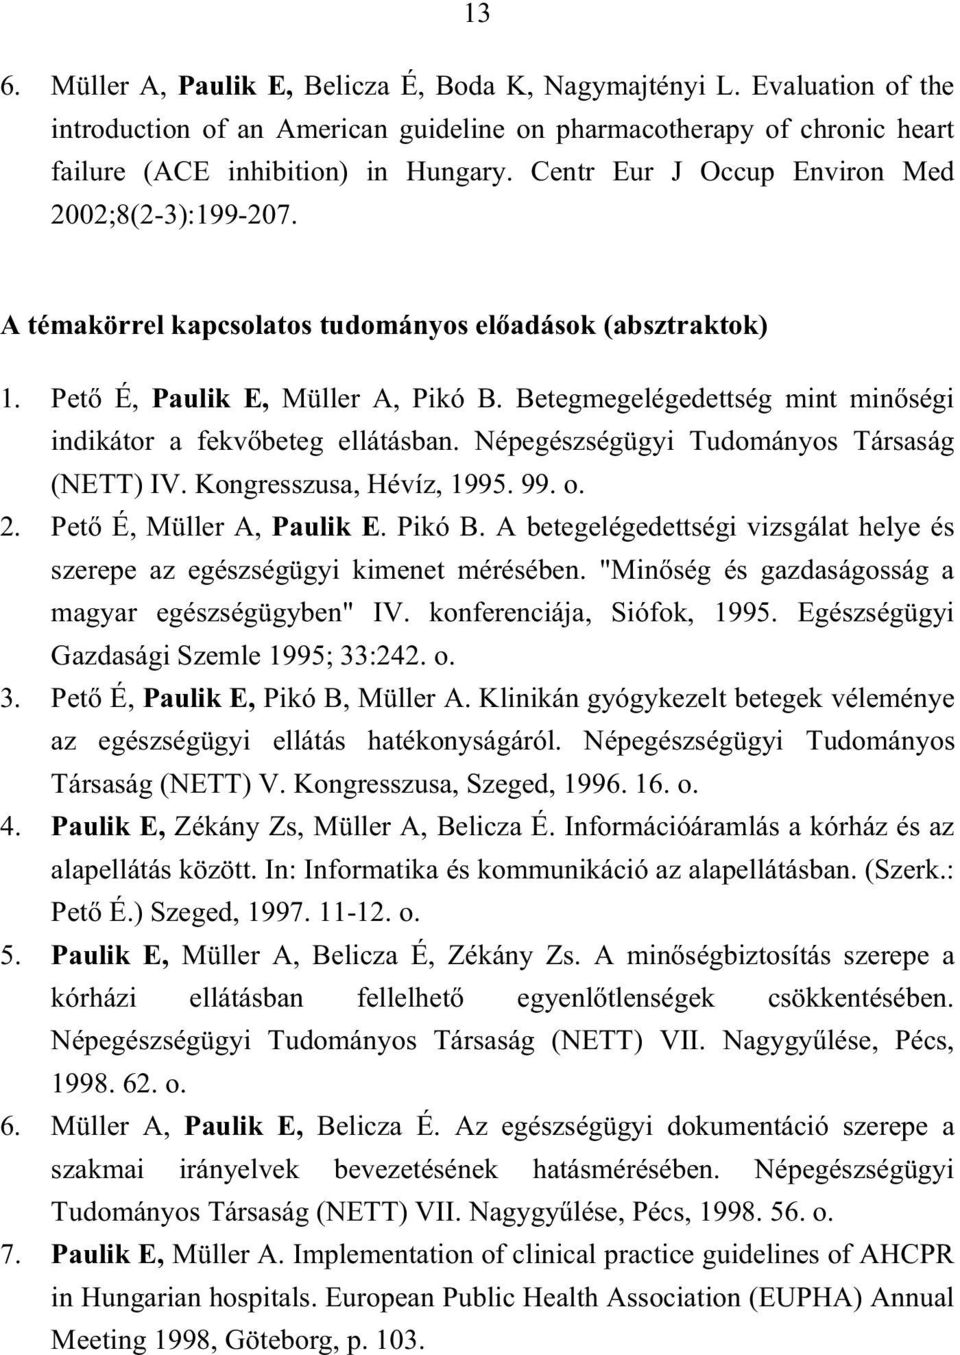 Betegmegelégedettség mint min ségi indikátor a fekv beteg ellátásban. Népegészségügyi Tudományos Társaság (NETT) IV. Kongresszusa, Hévíz, 1995. 99. o. 2. Pet É, Müller A, Paulik E. Pikó B.